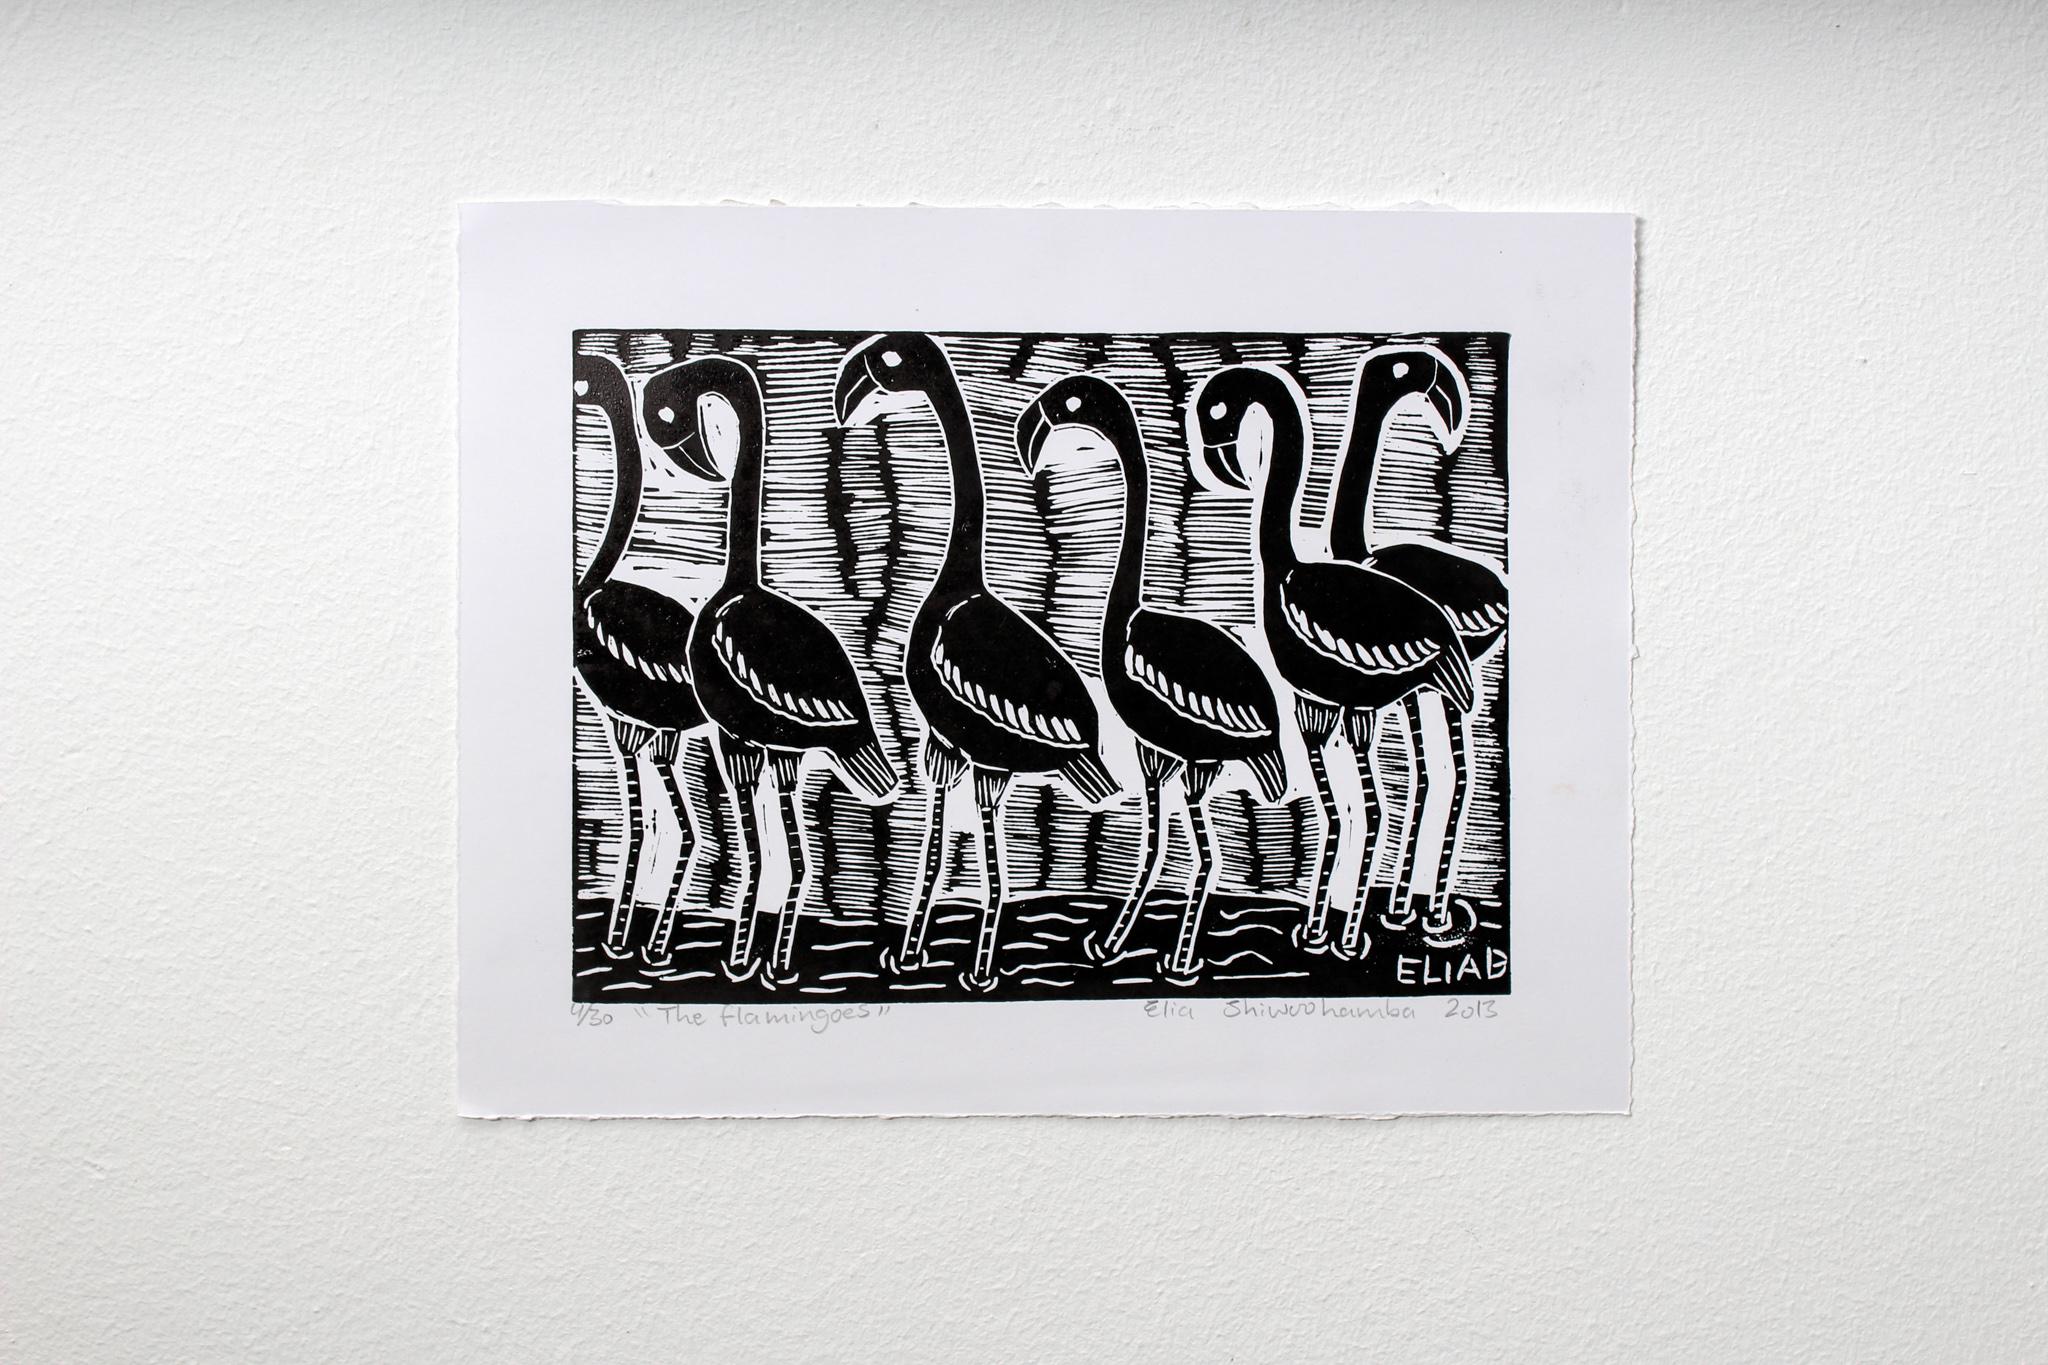 Die Flamingos, 2013. Linoleum-Blockdruck auf Papier. Auflage von 30 Stück. 

Elia Shiwoohamba wurde 1981 in Windhoek, Namibia, geboren. Im Jahr 2006 machte er seinen Abschluss am John Muafangejo Art Centre in Windhoek. Shiwoohamba ist auf